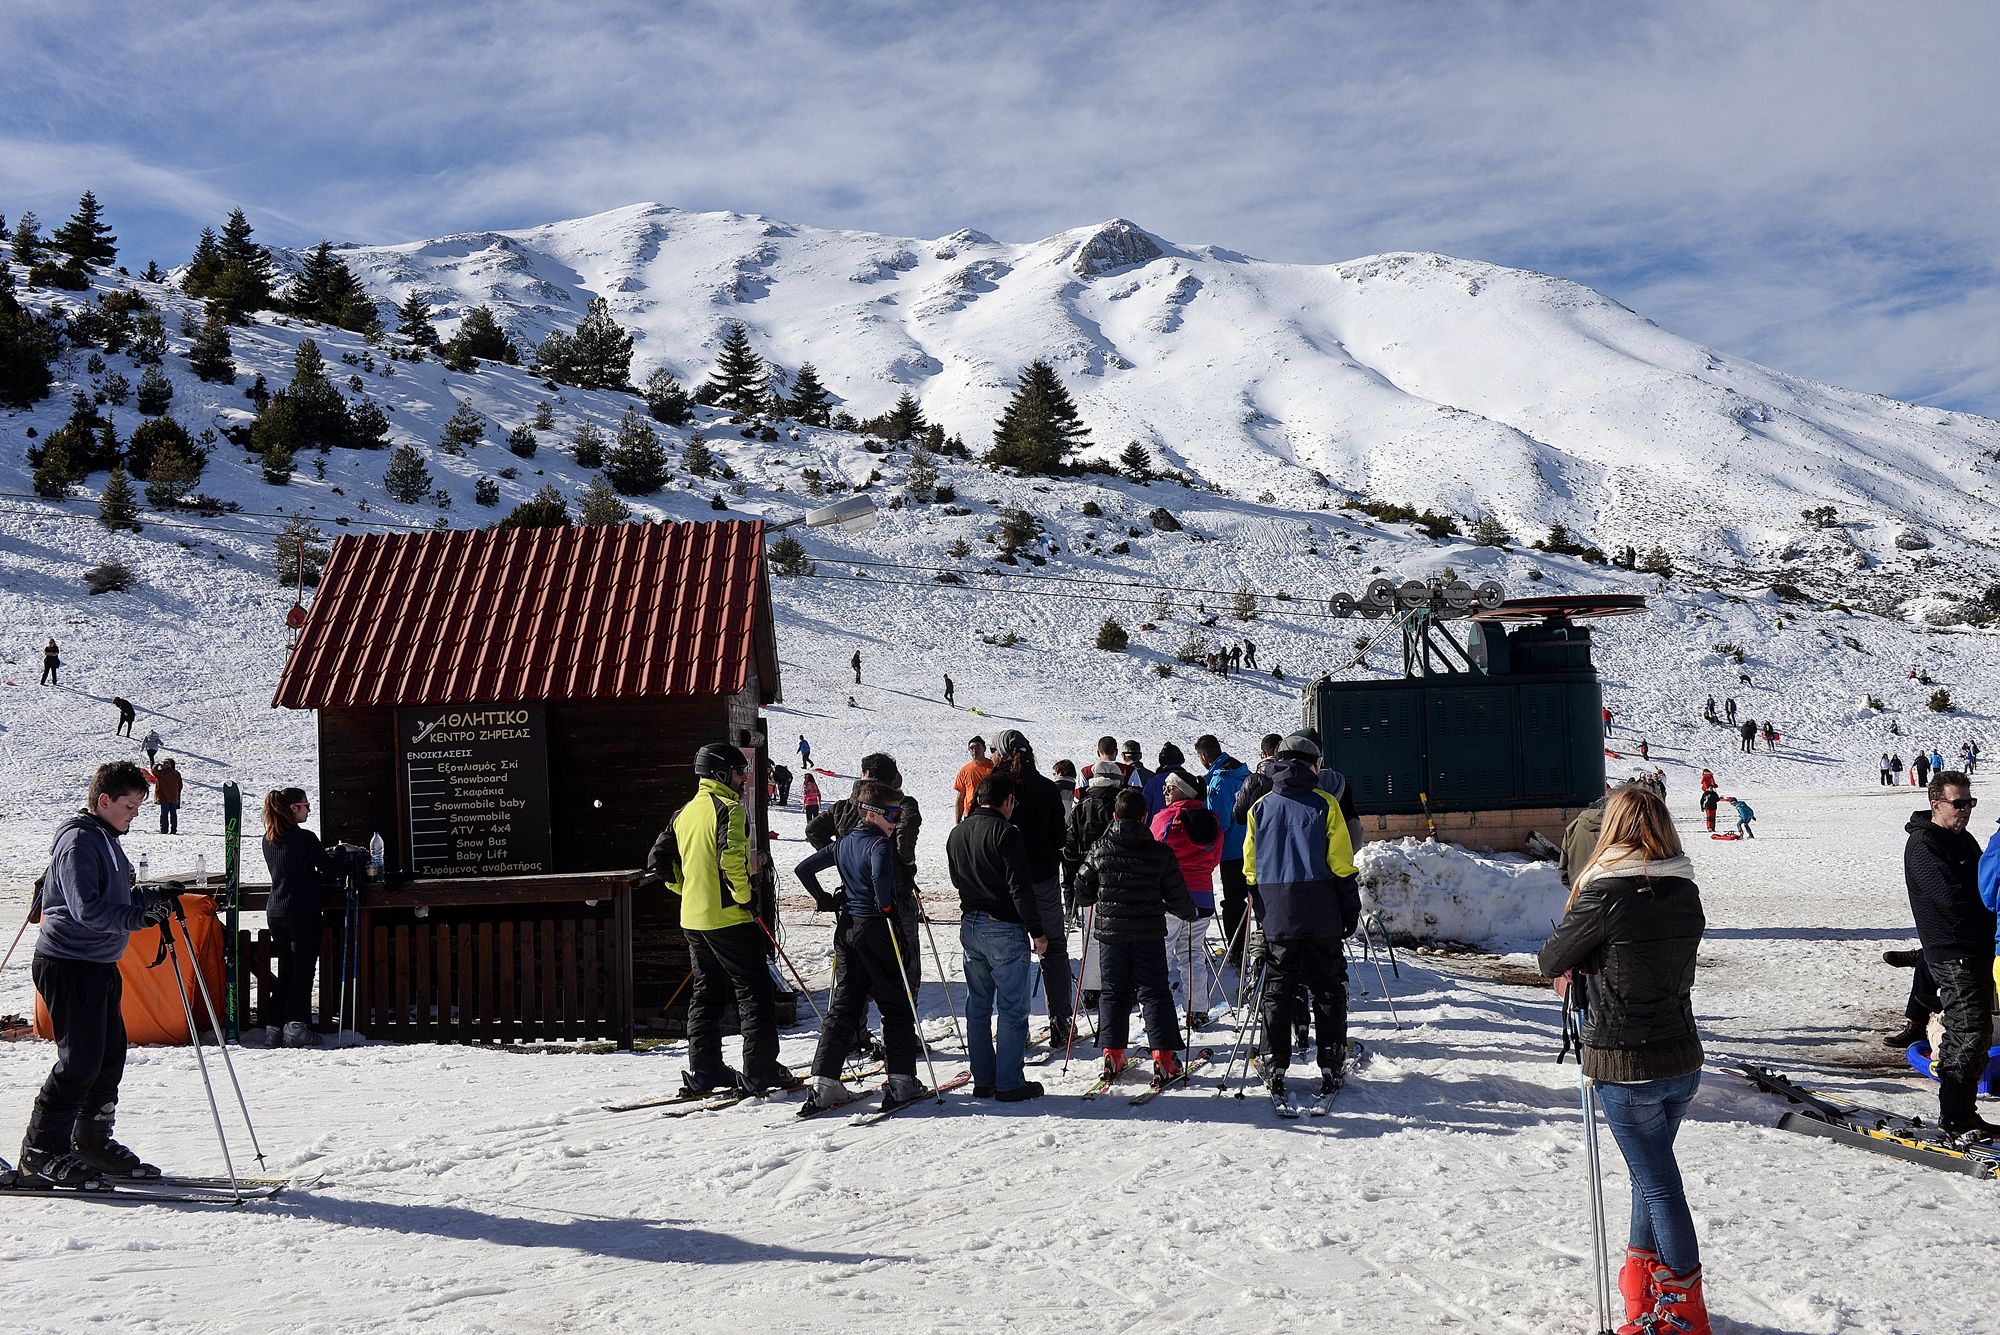 Κερδίστε ένα υπέροχο πακέτο διαμονής και διασκέδασης στο χιόνι στα Τρίκαλα Κορινθίας